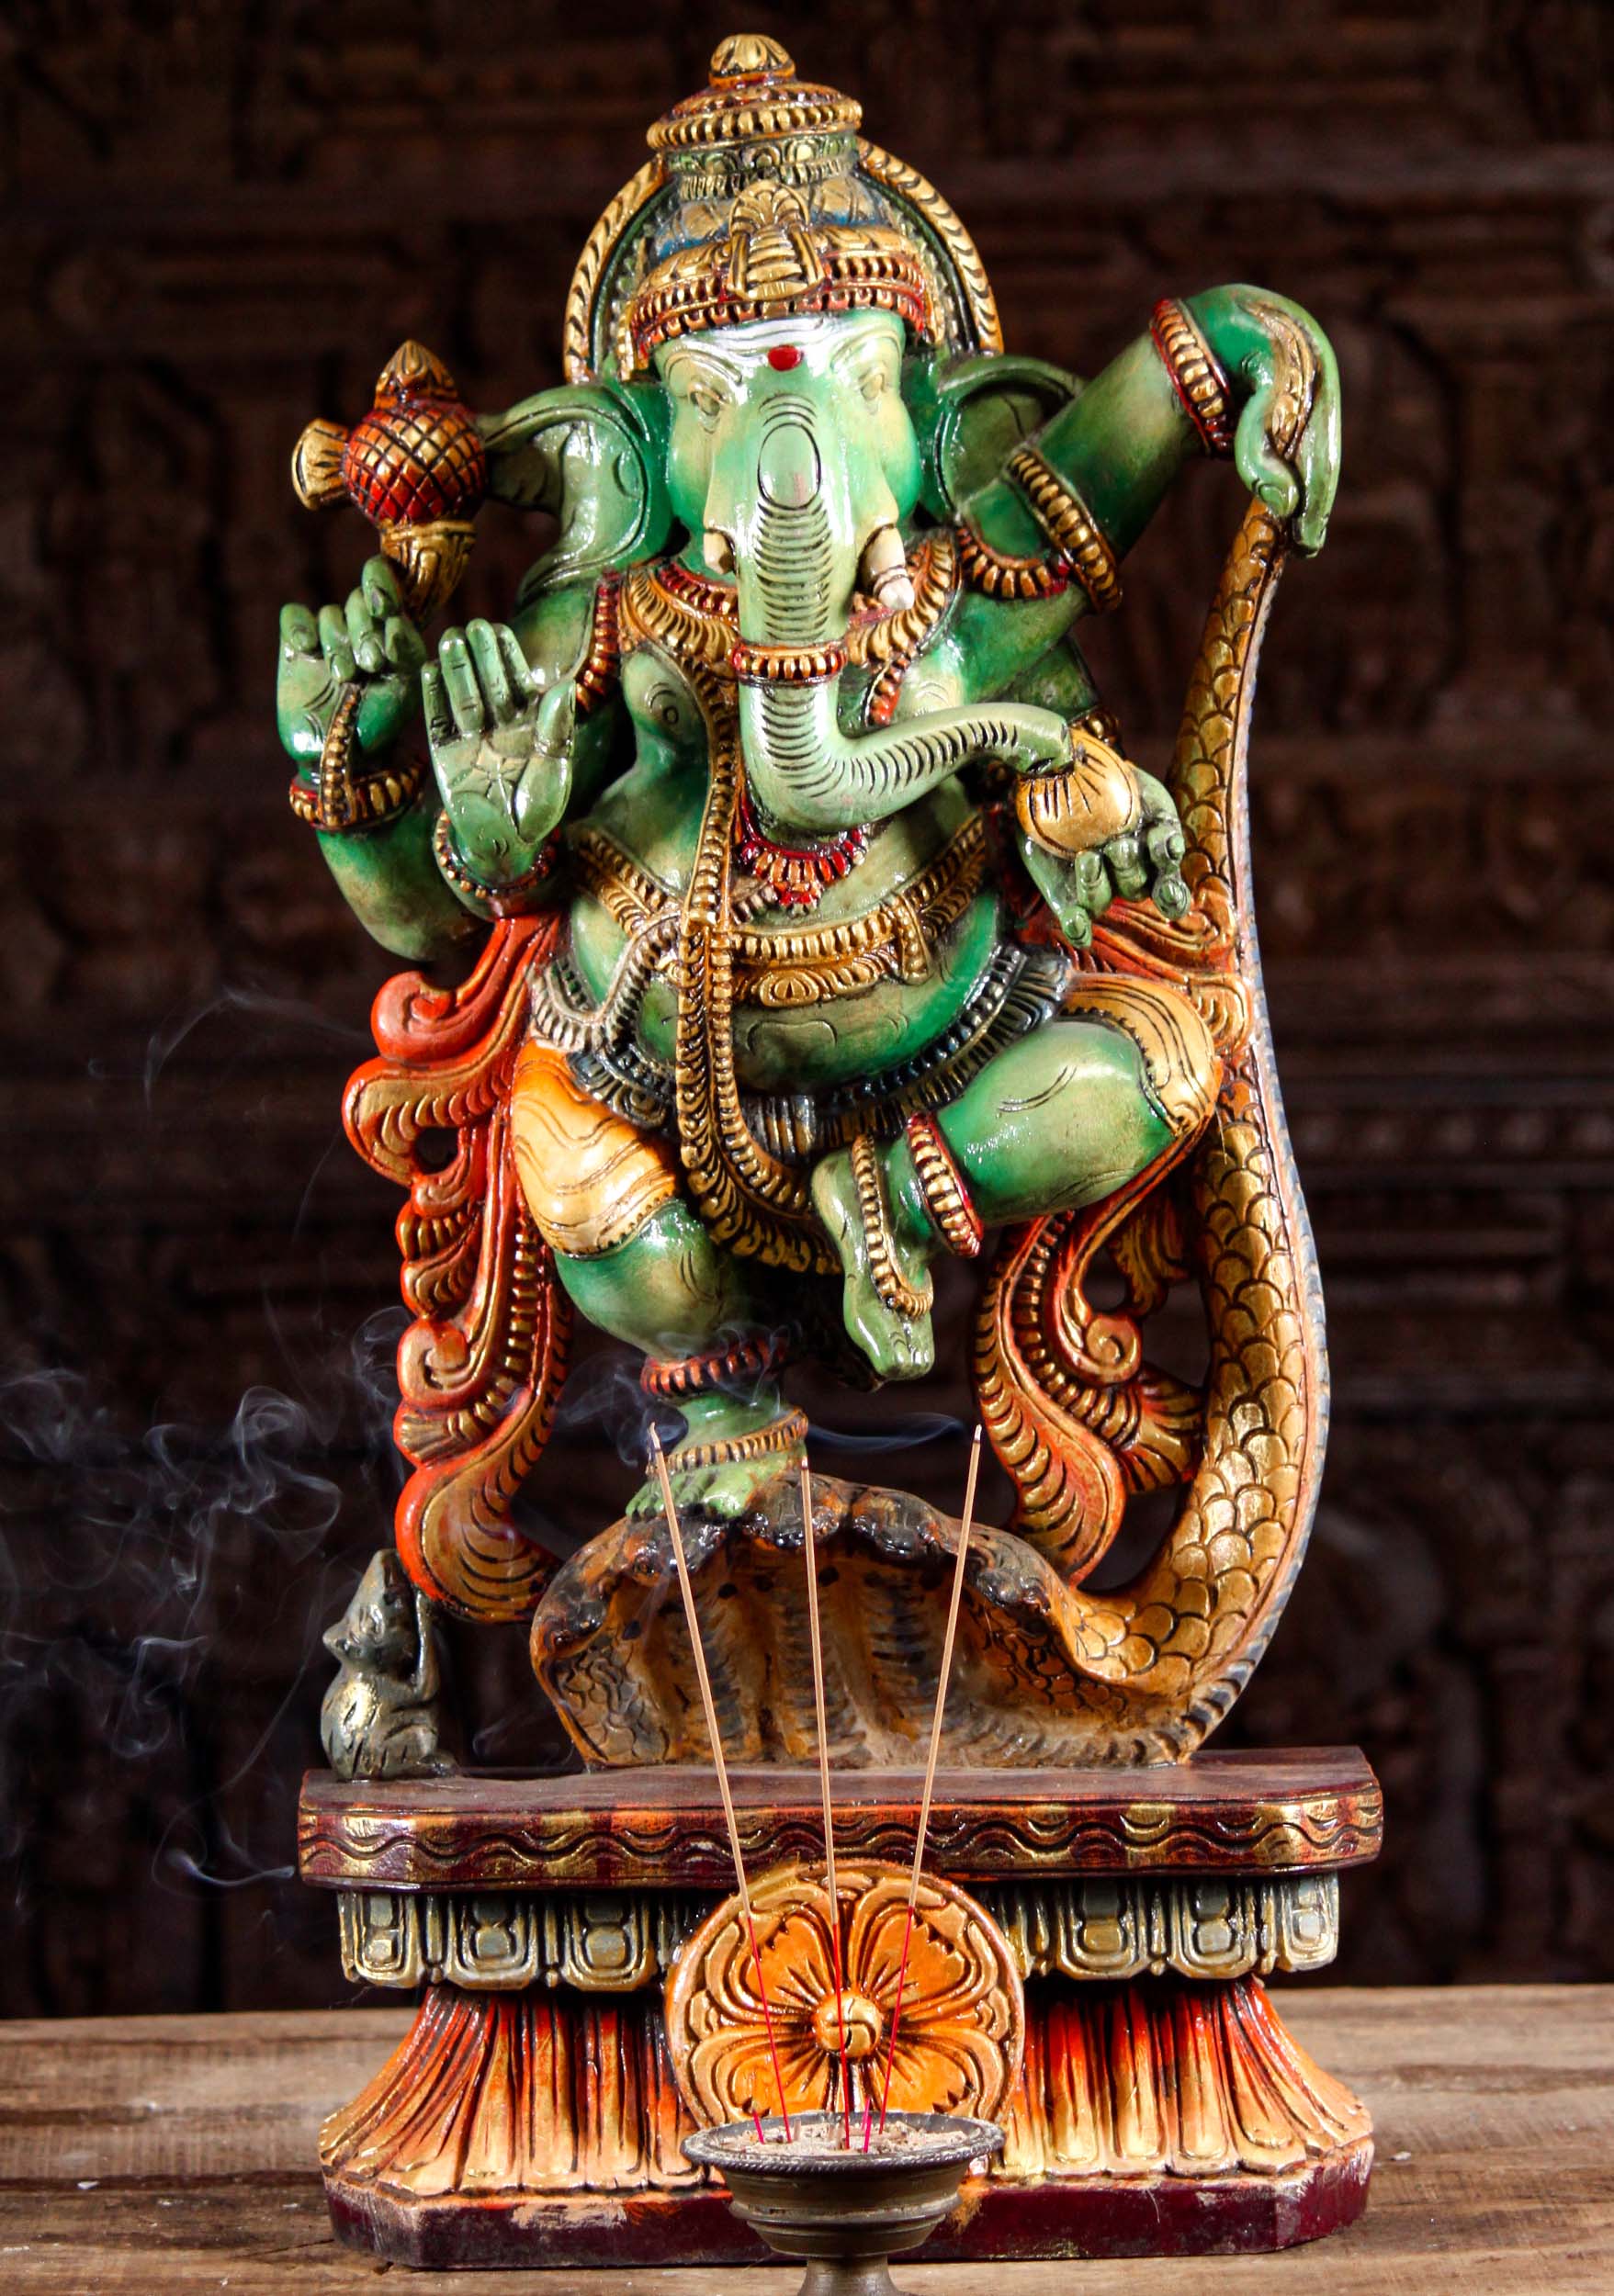 Chennai: Lord Ganesha in cricketing poses at Chennai Temple #Gallery